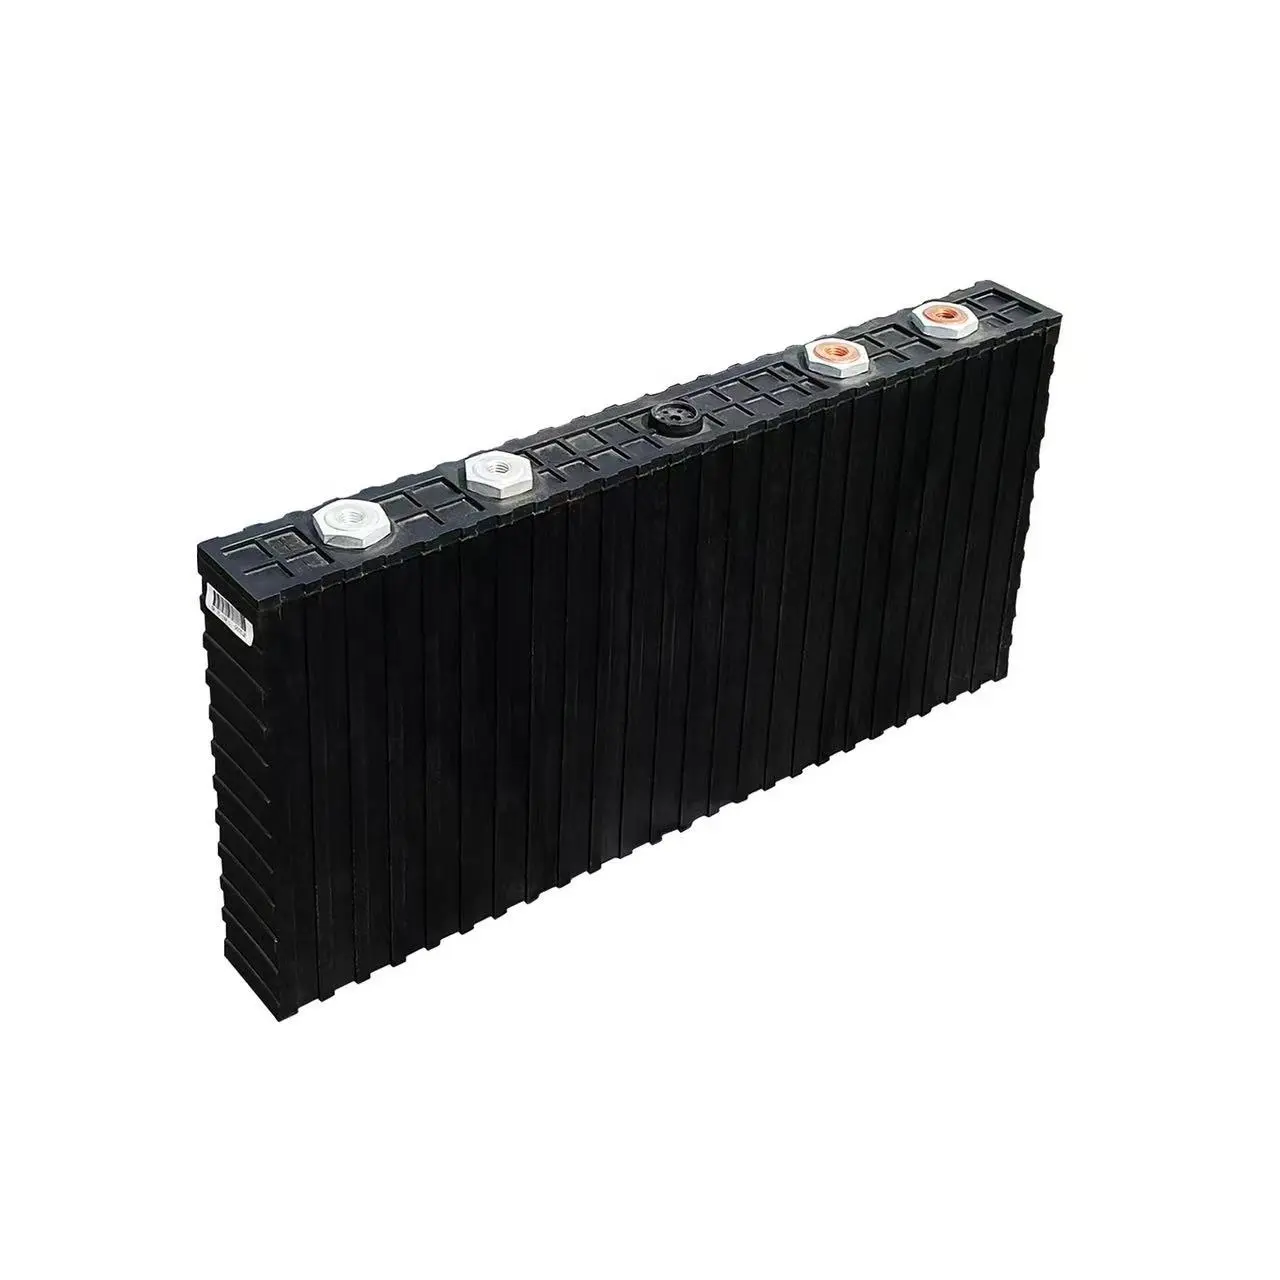 超大容量価値価格lifepo4バッテリー3.2v 700ah 3.2v 200ahエネルギー貯蔵ソーラーカーリチウム電池の最良の選択